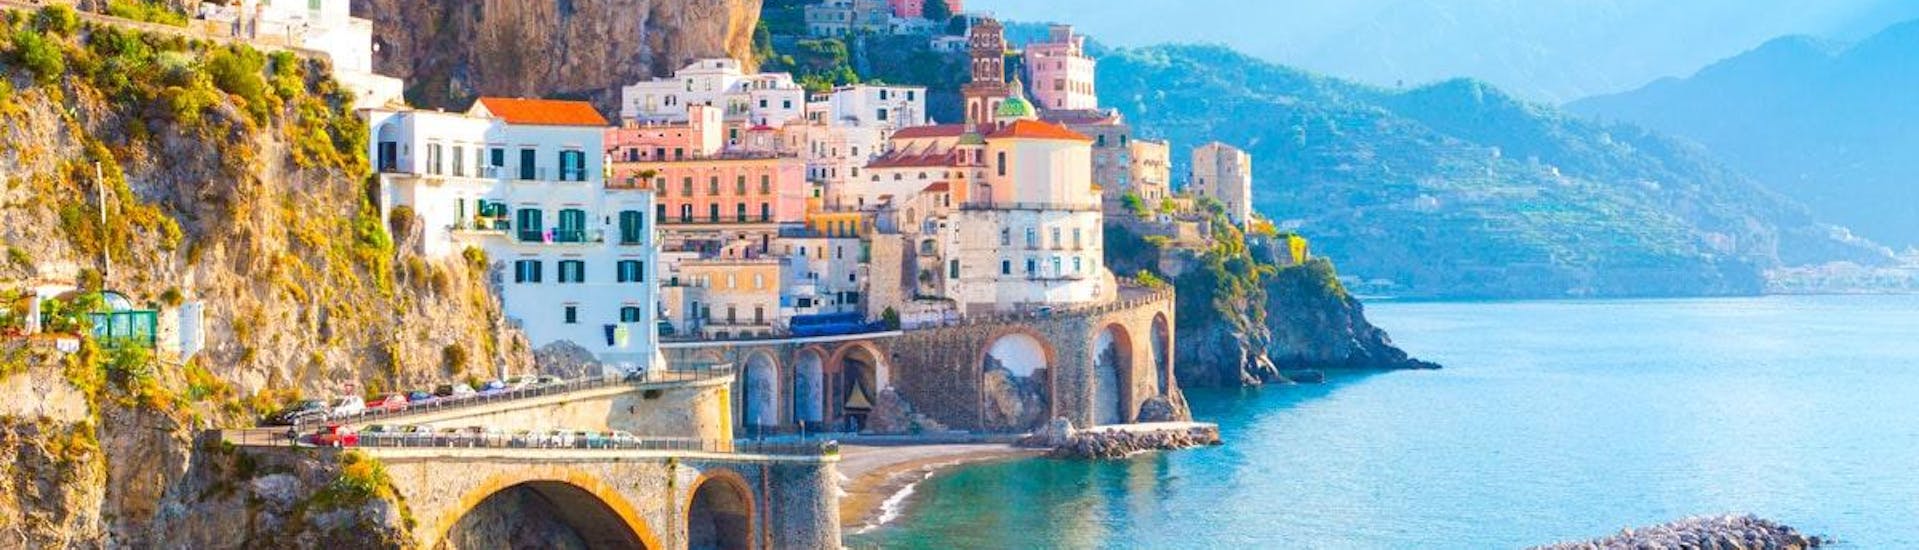 Paseo en barco desde Torre del Greco a Positano y Amalfi.